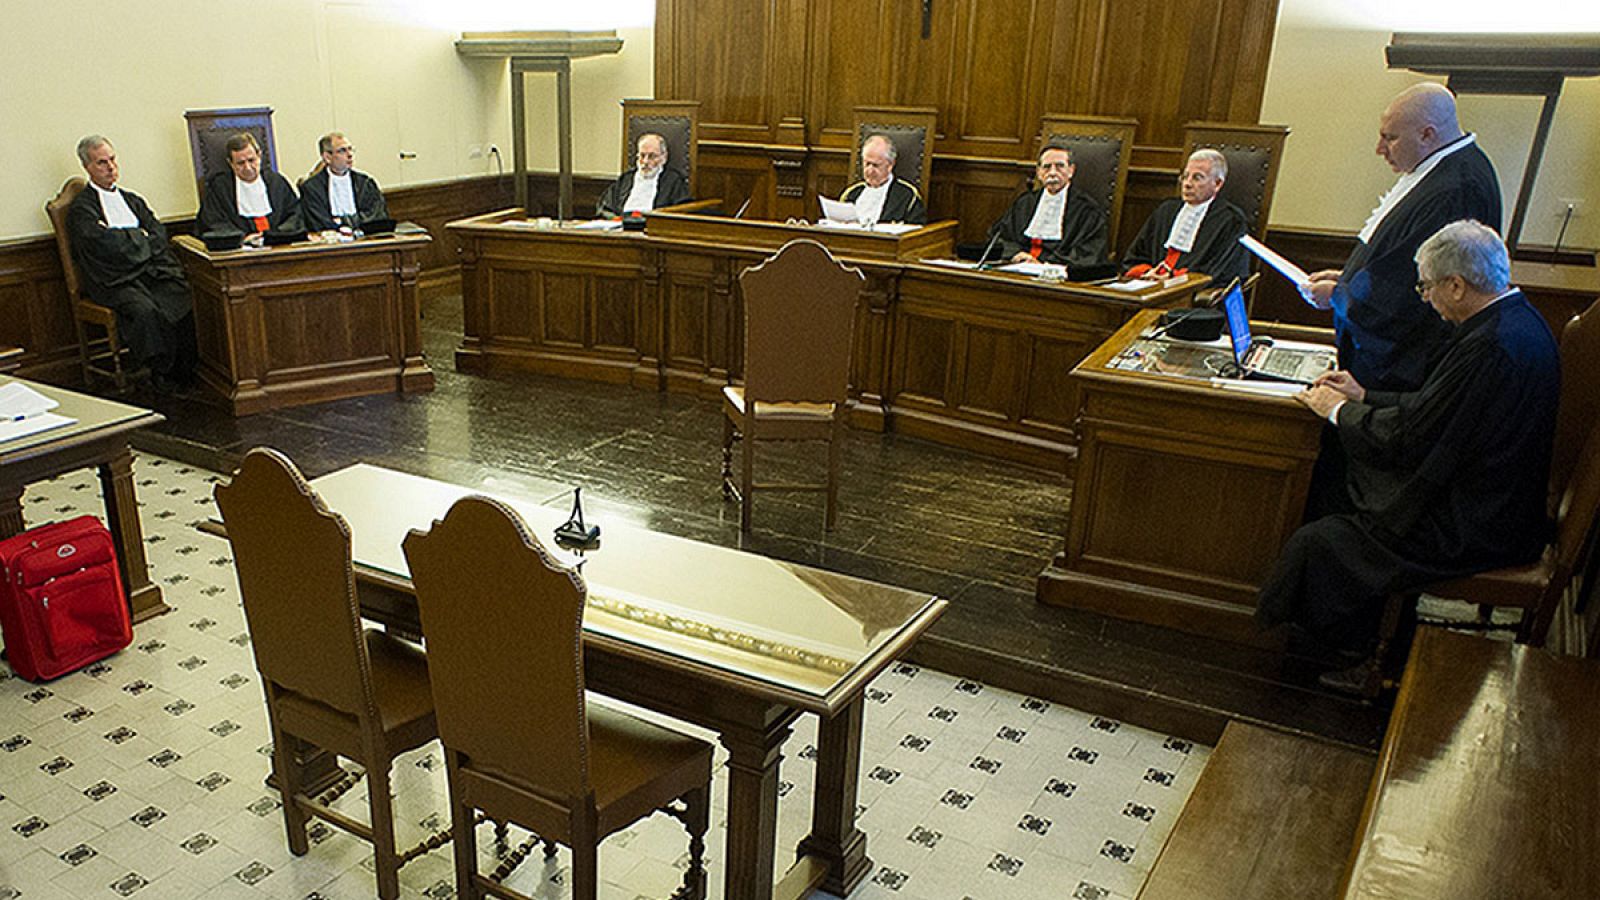 Oficina Judicial del Tribunal vaticano donde se celebra el juicio contra Wesolowski